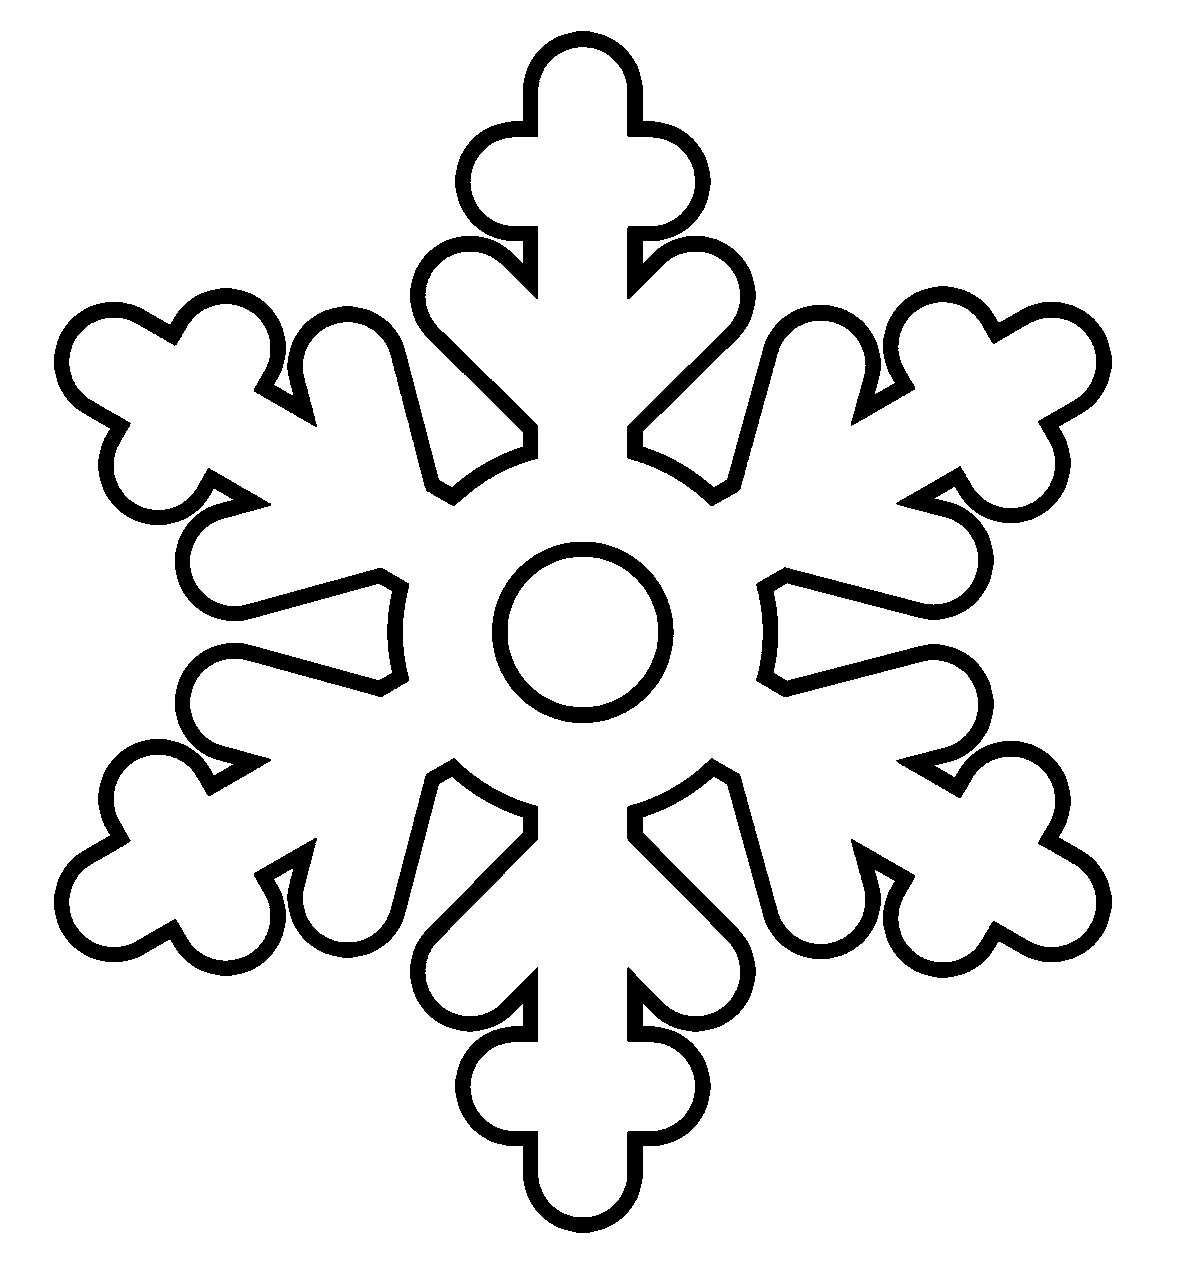 Copo de nieve fácil y gratuito de Snowflake